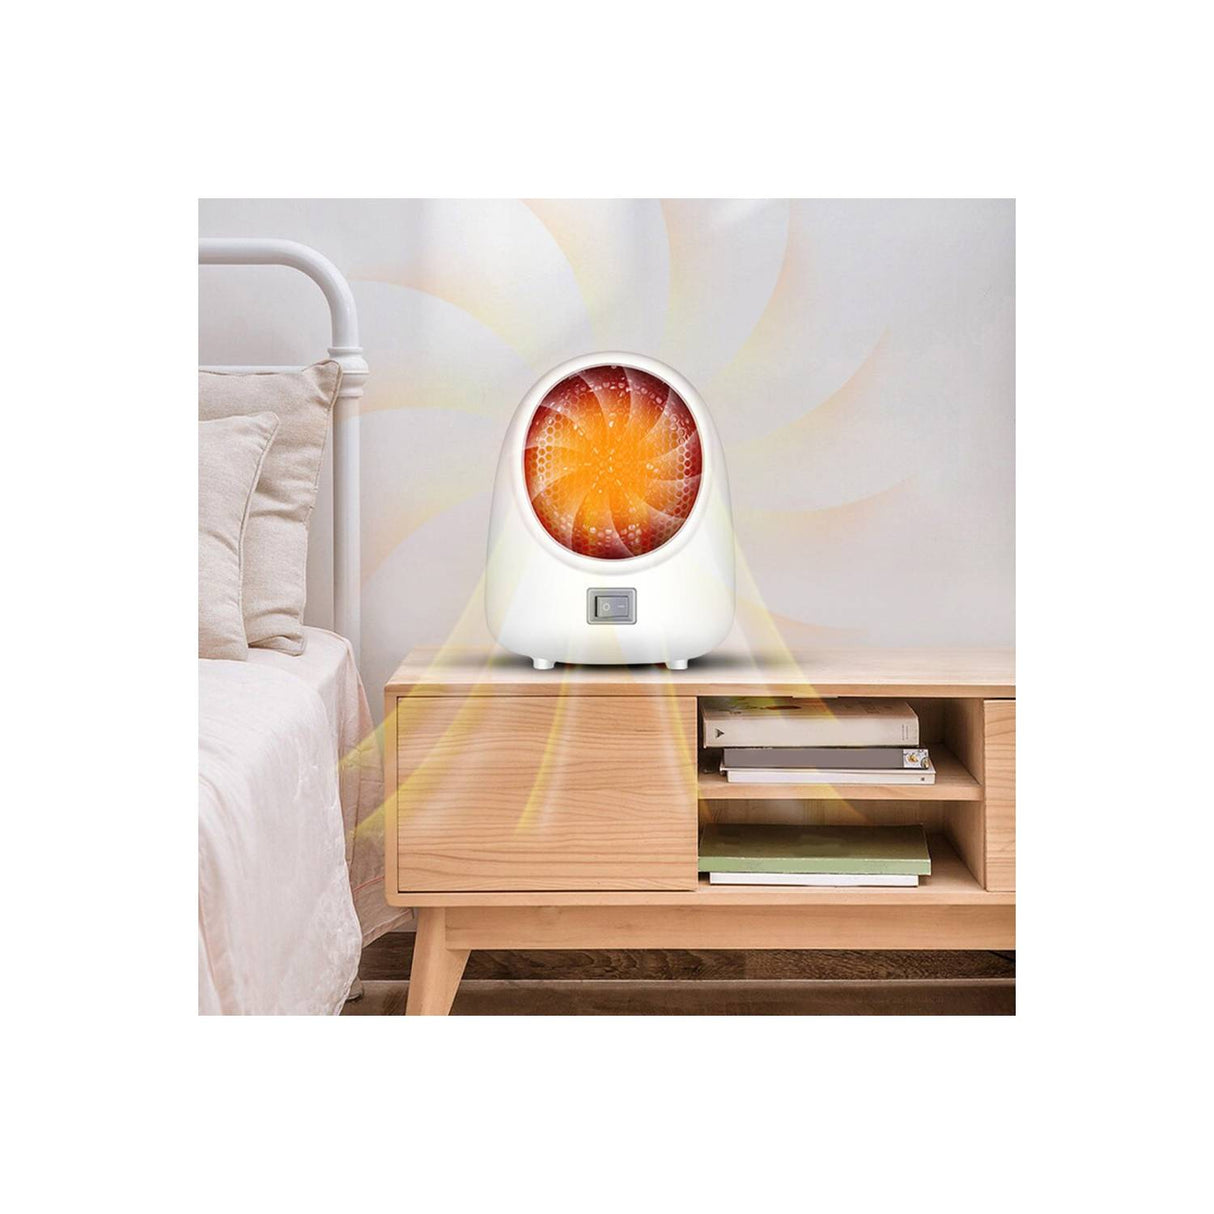 Luz con despertador simulador de amanecer. (OPENBOX) –